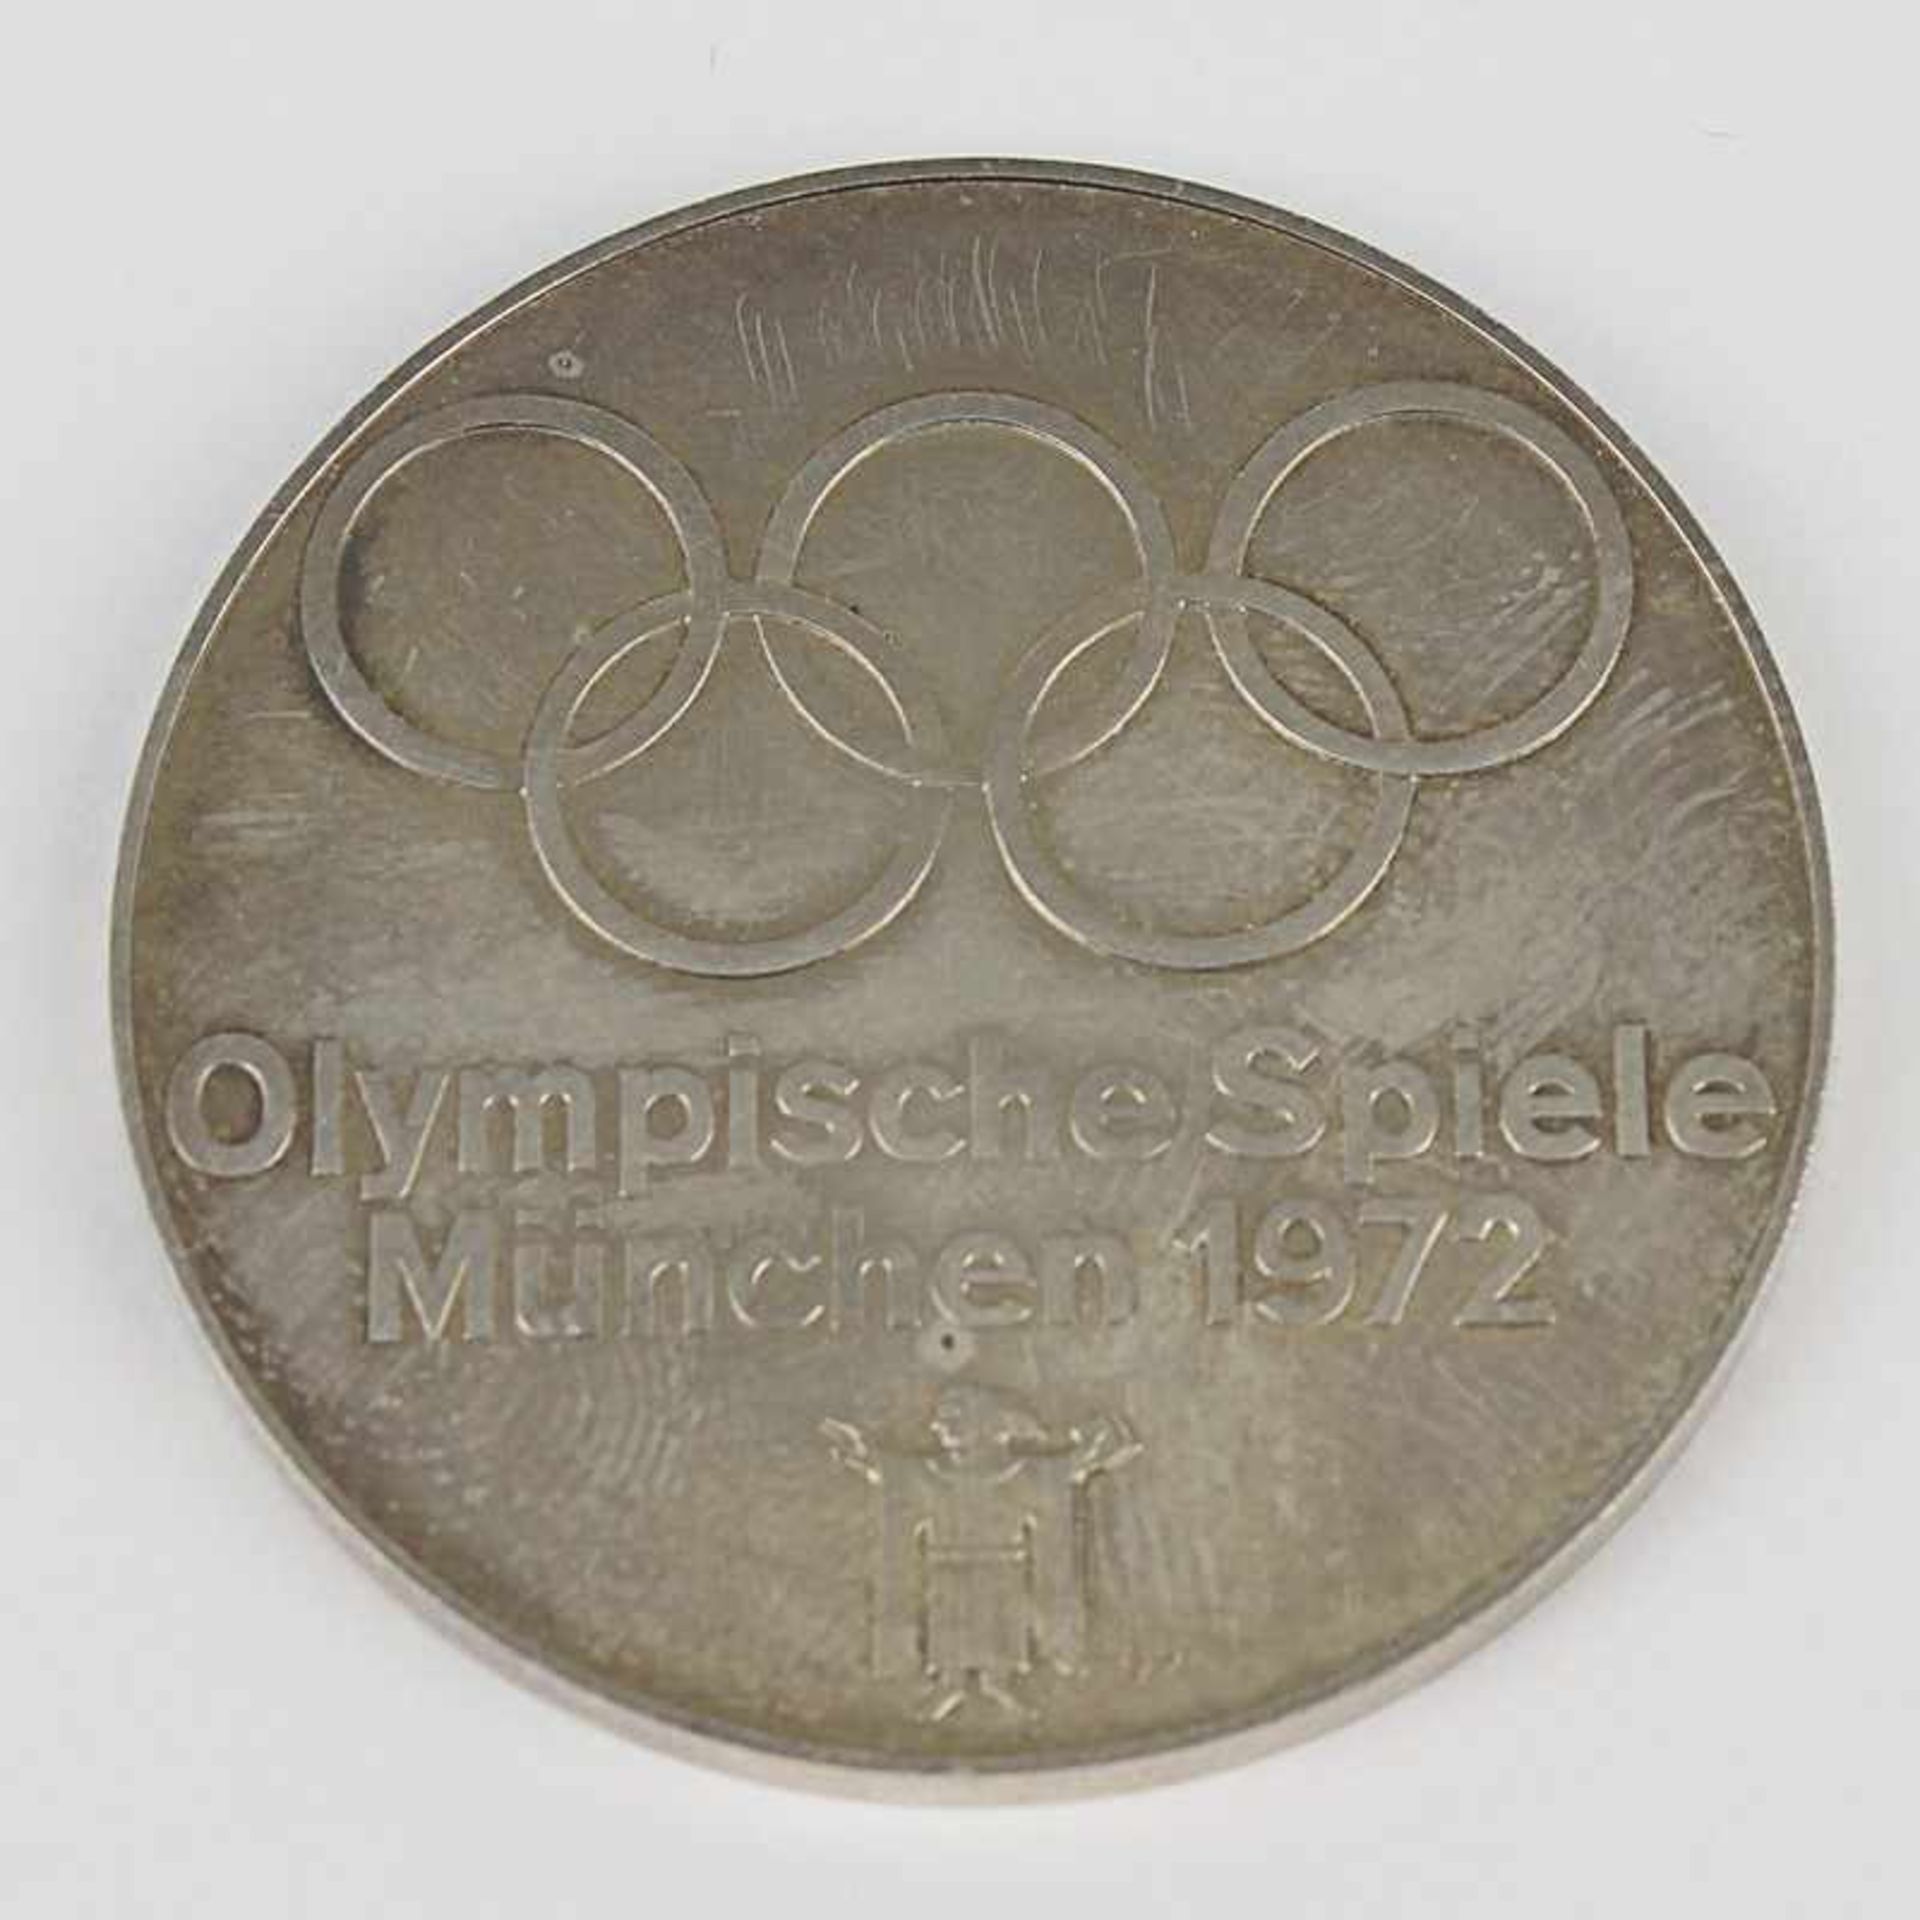 Medaille Olympiade 1972 Si 925, G 27g, D 4cm, vz